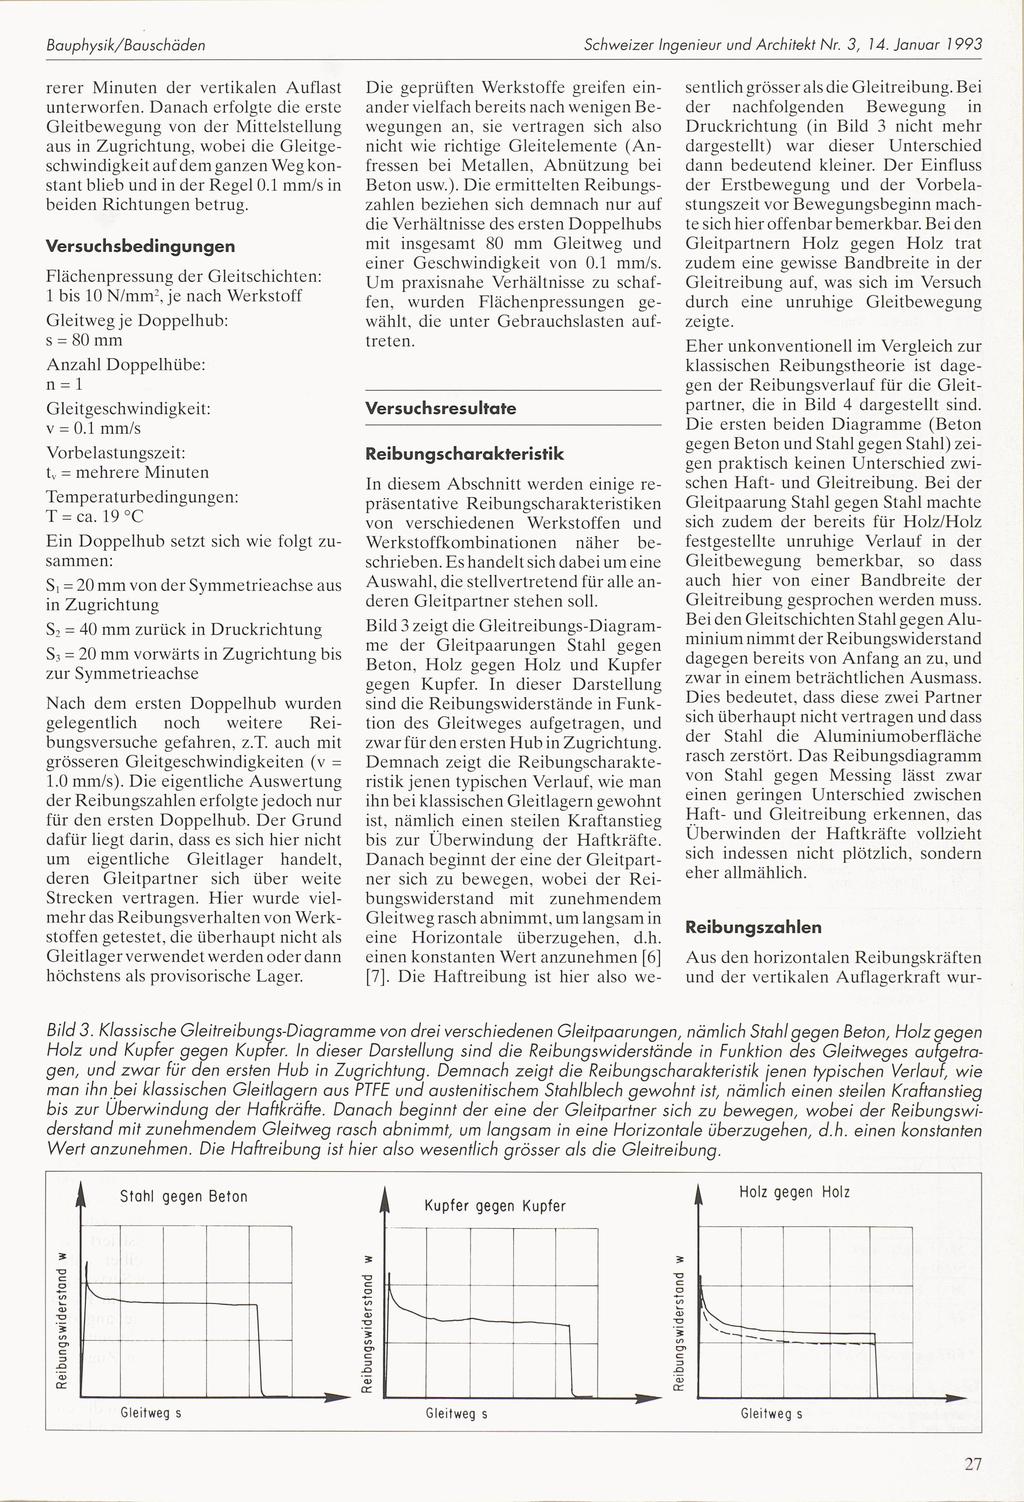 Rebungsderstand Rebungsderstand Rebungsderstand Bauphysk/Bauschäden Schezer Ingeneur und Archtekt Nr. 3, 14. Januar 1993 rerer Mnuten der vertkalen Auflast unterorfen.